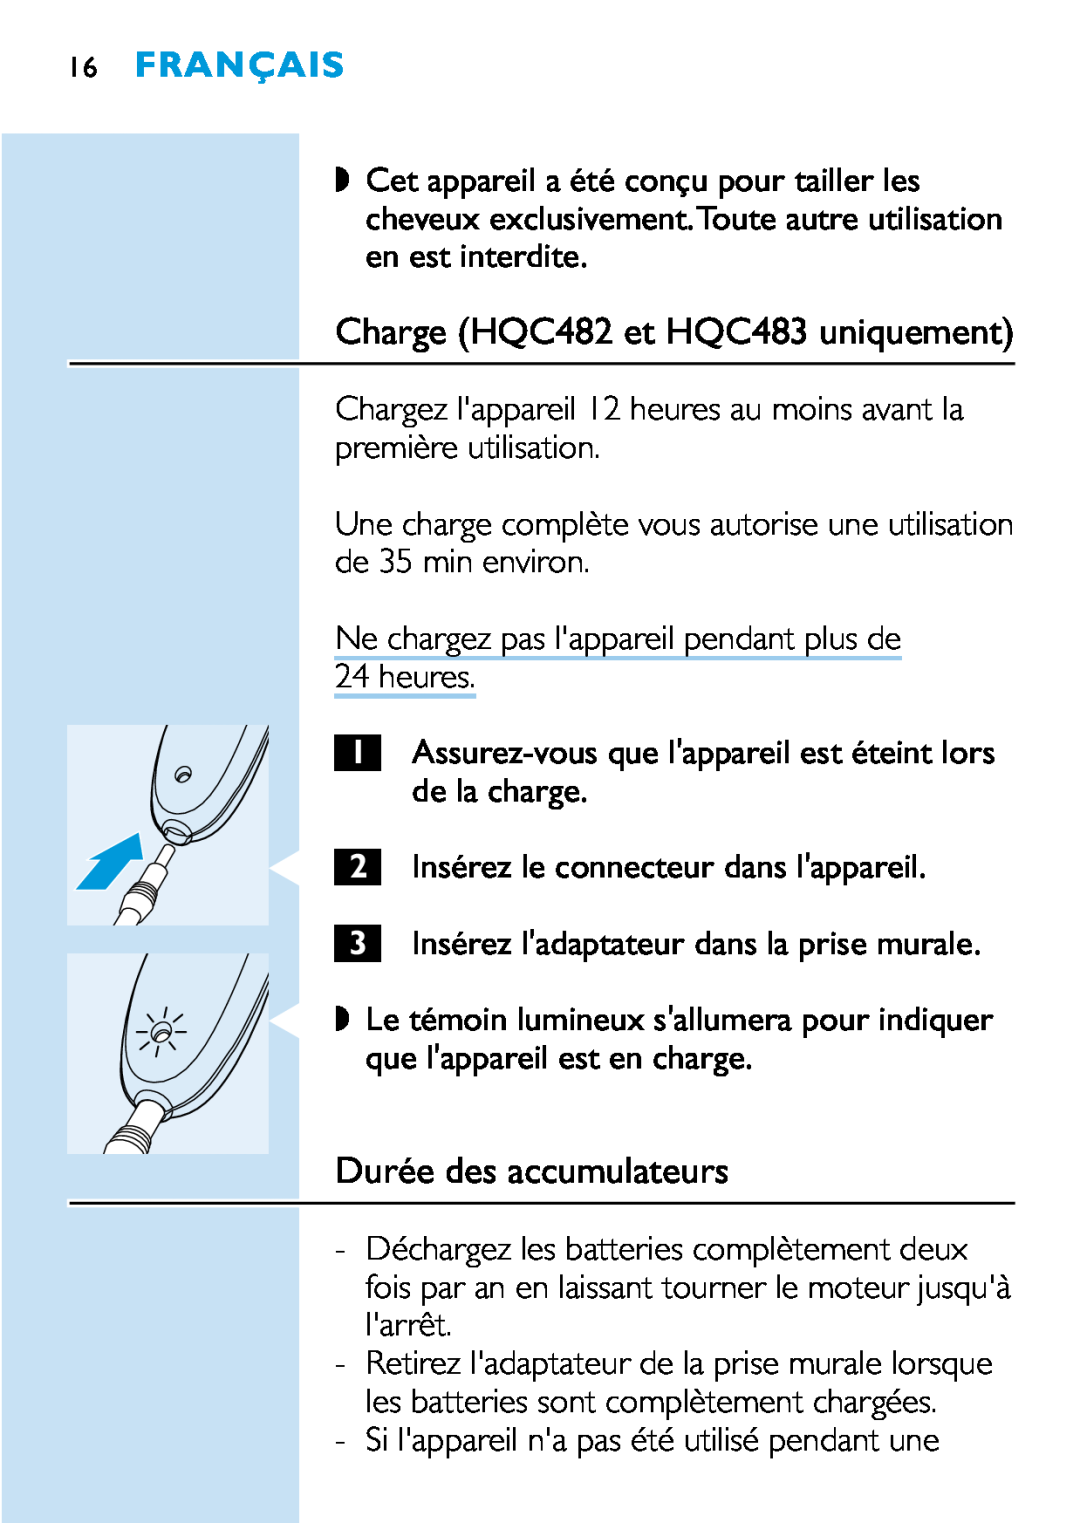 Philips HQC440 manual Charge HQC482 et HQC483 uniquement, Durée des accumulateurs, Français 